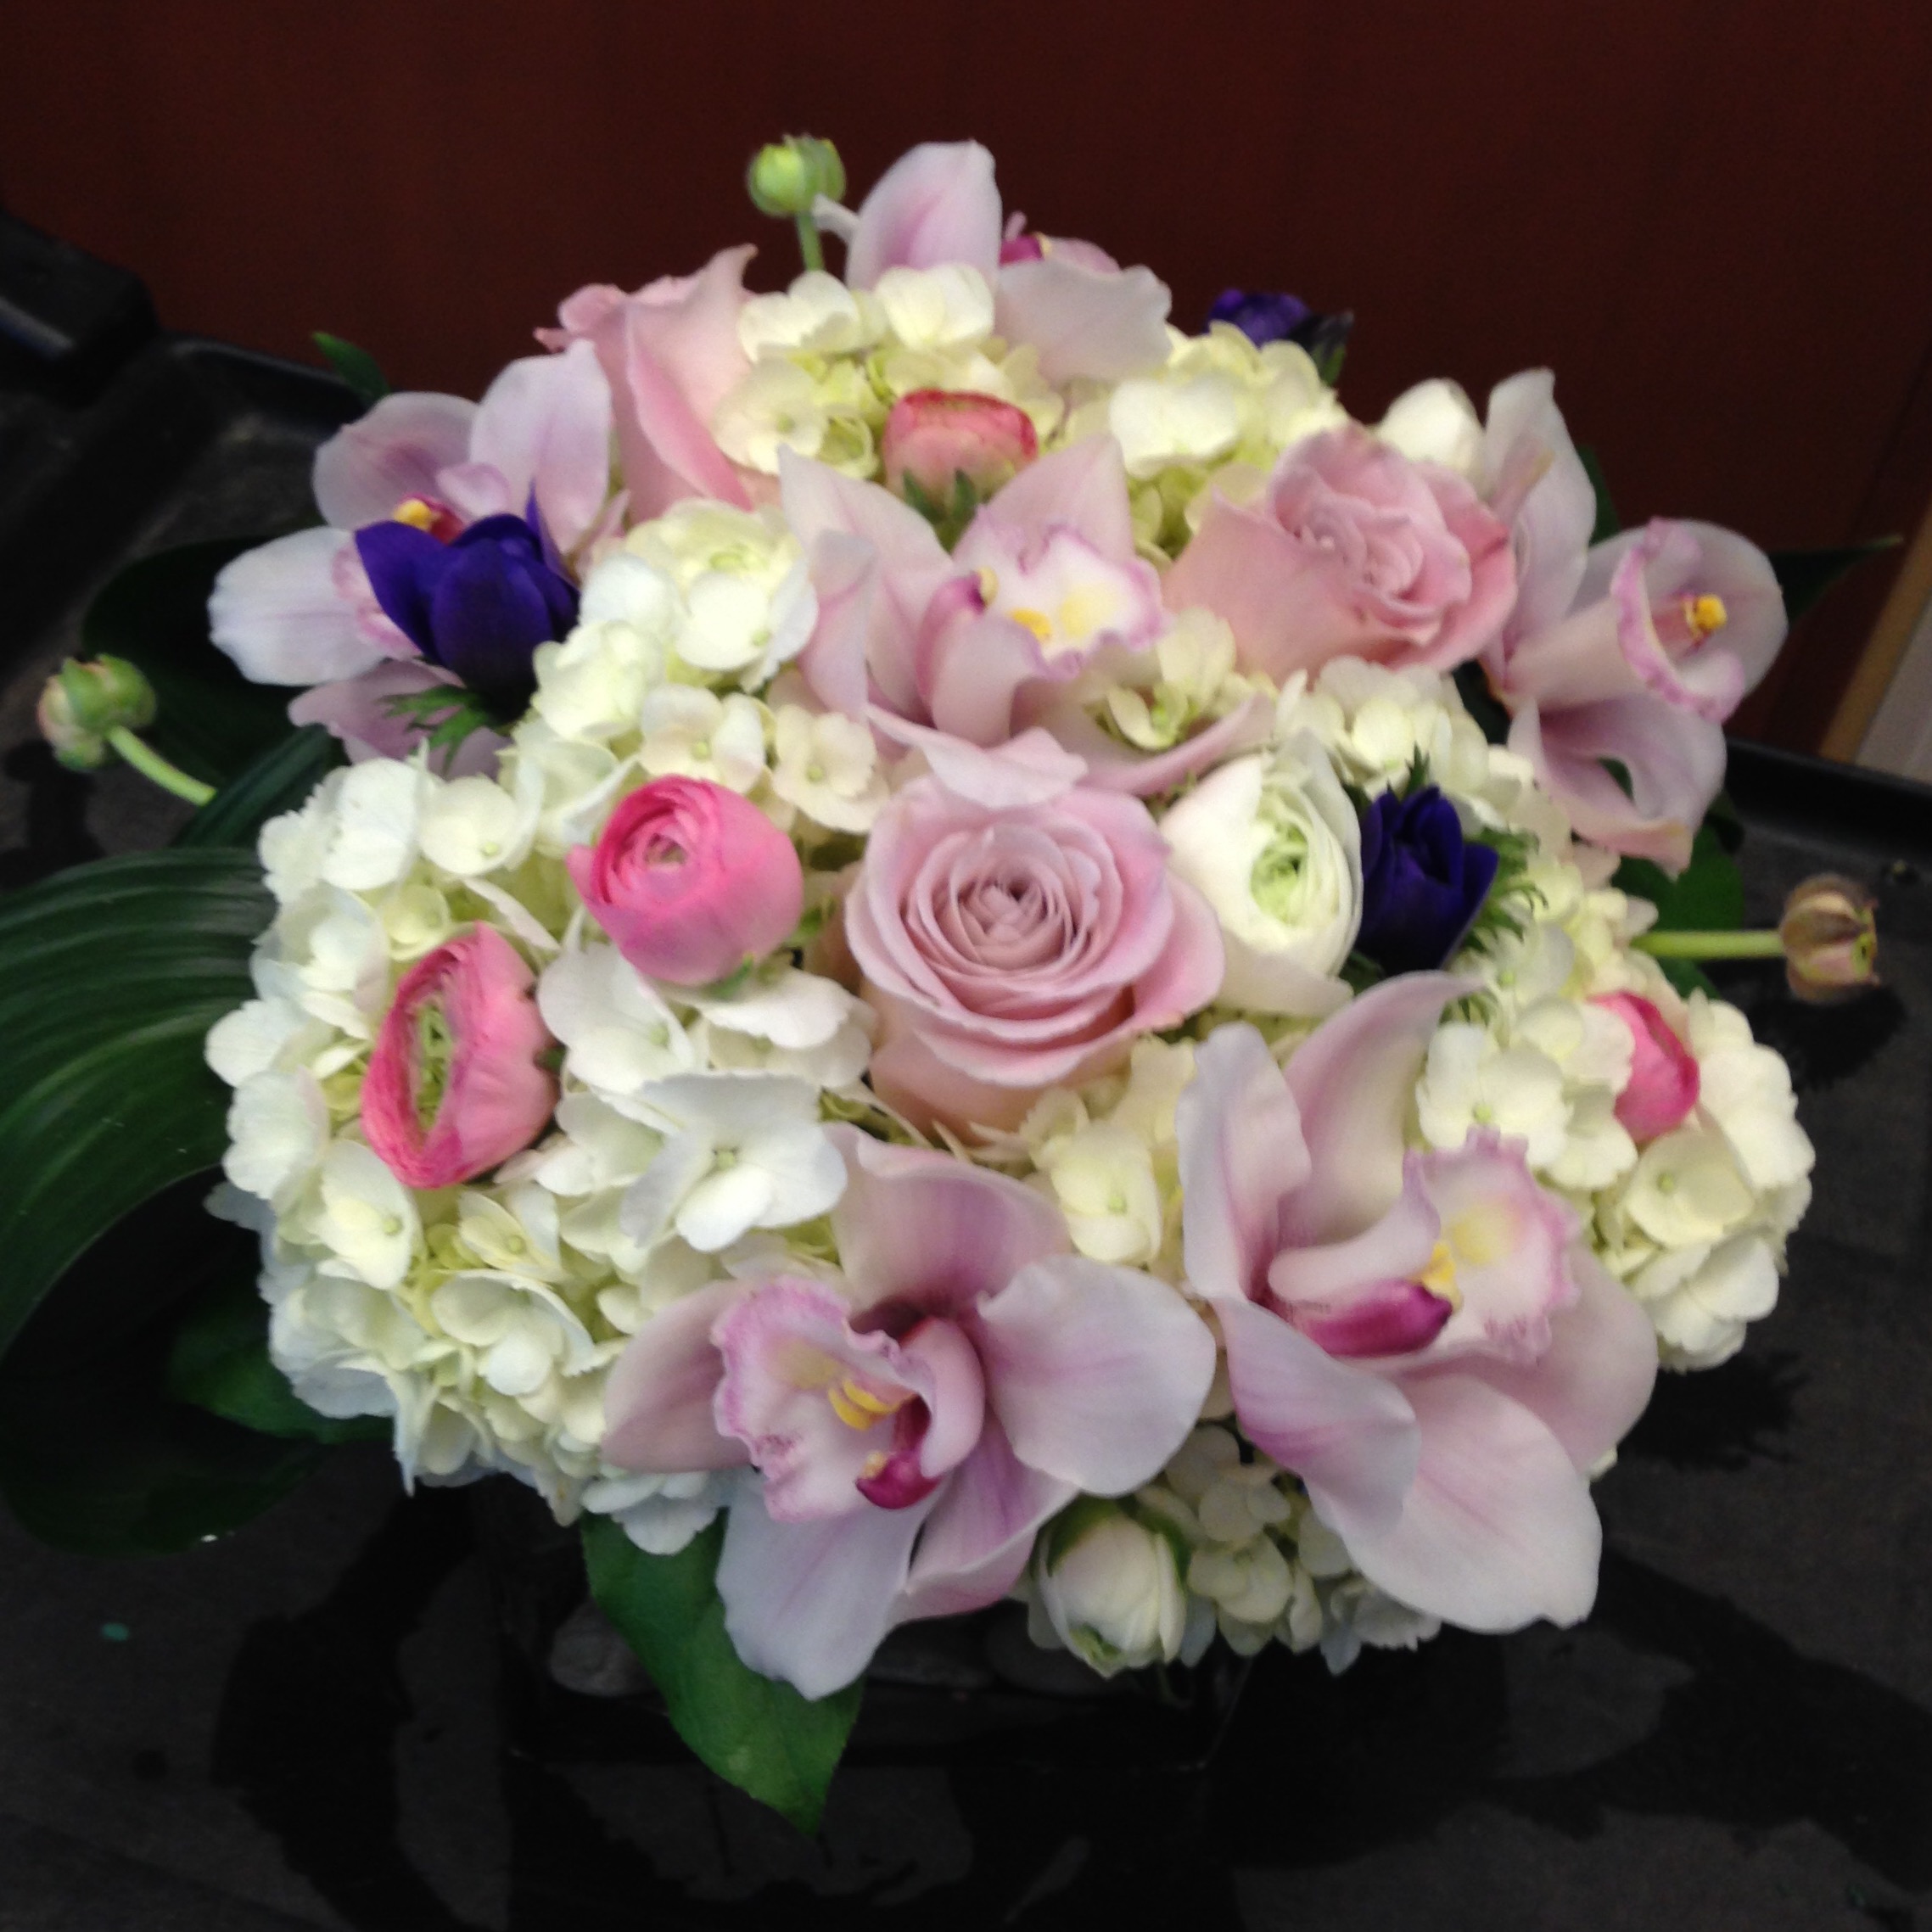 VASE806 White, Pink & Purple Flowers in low vase